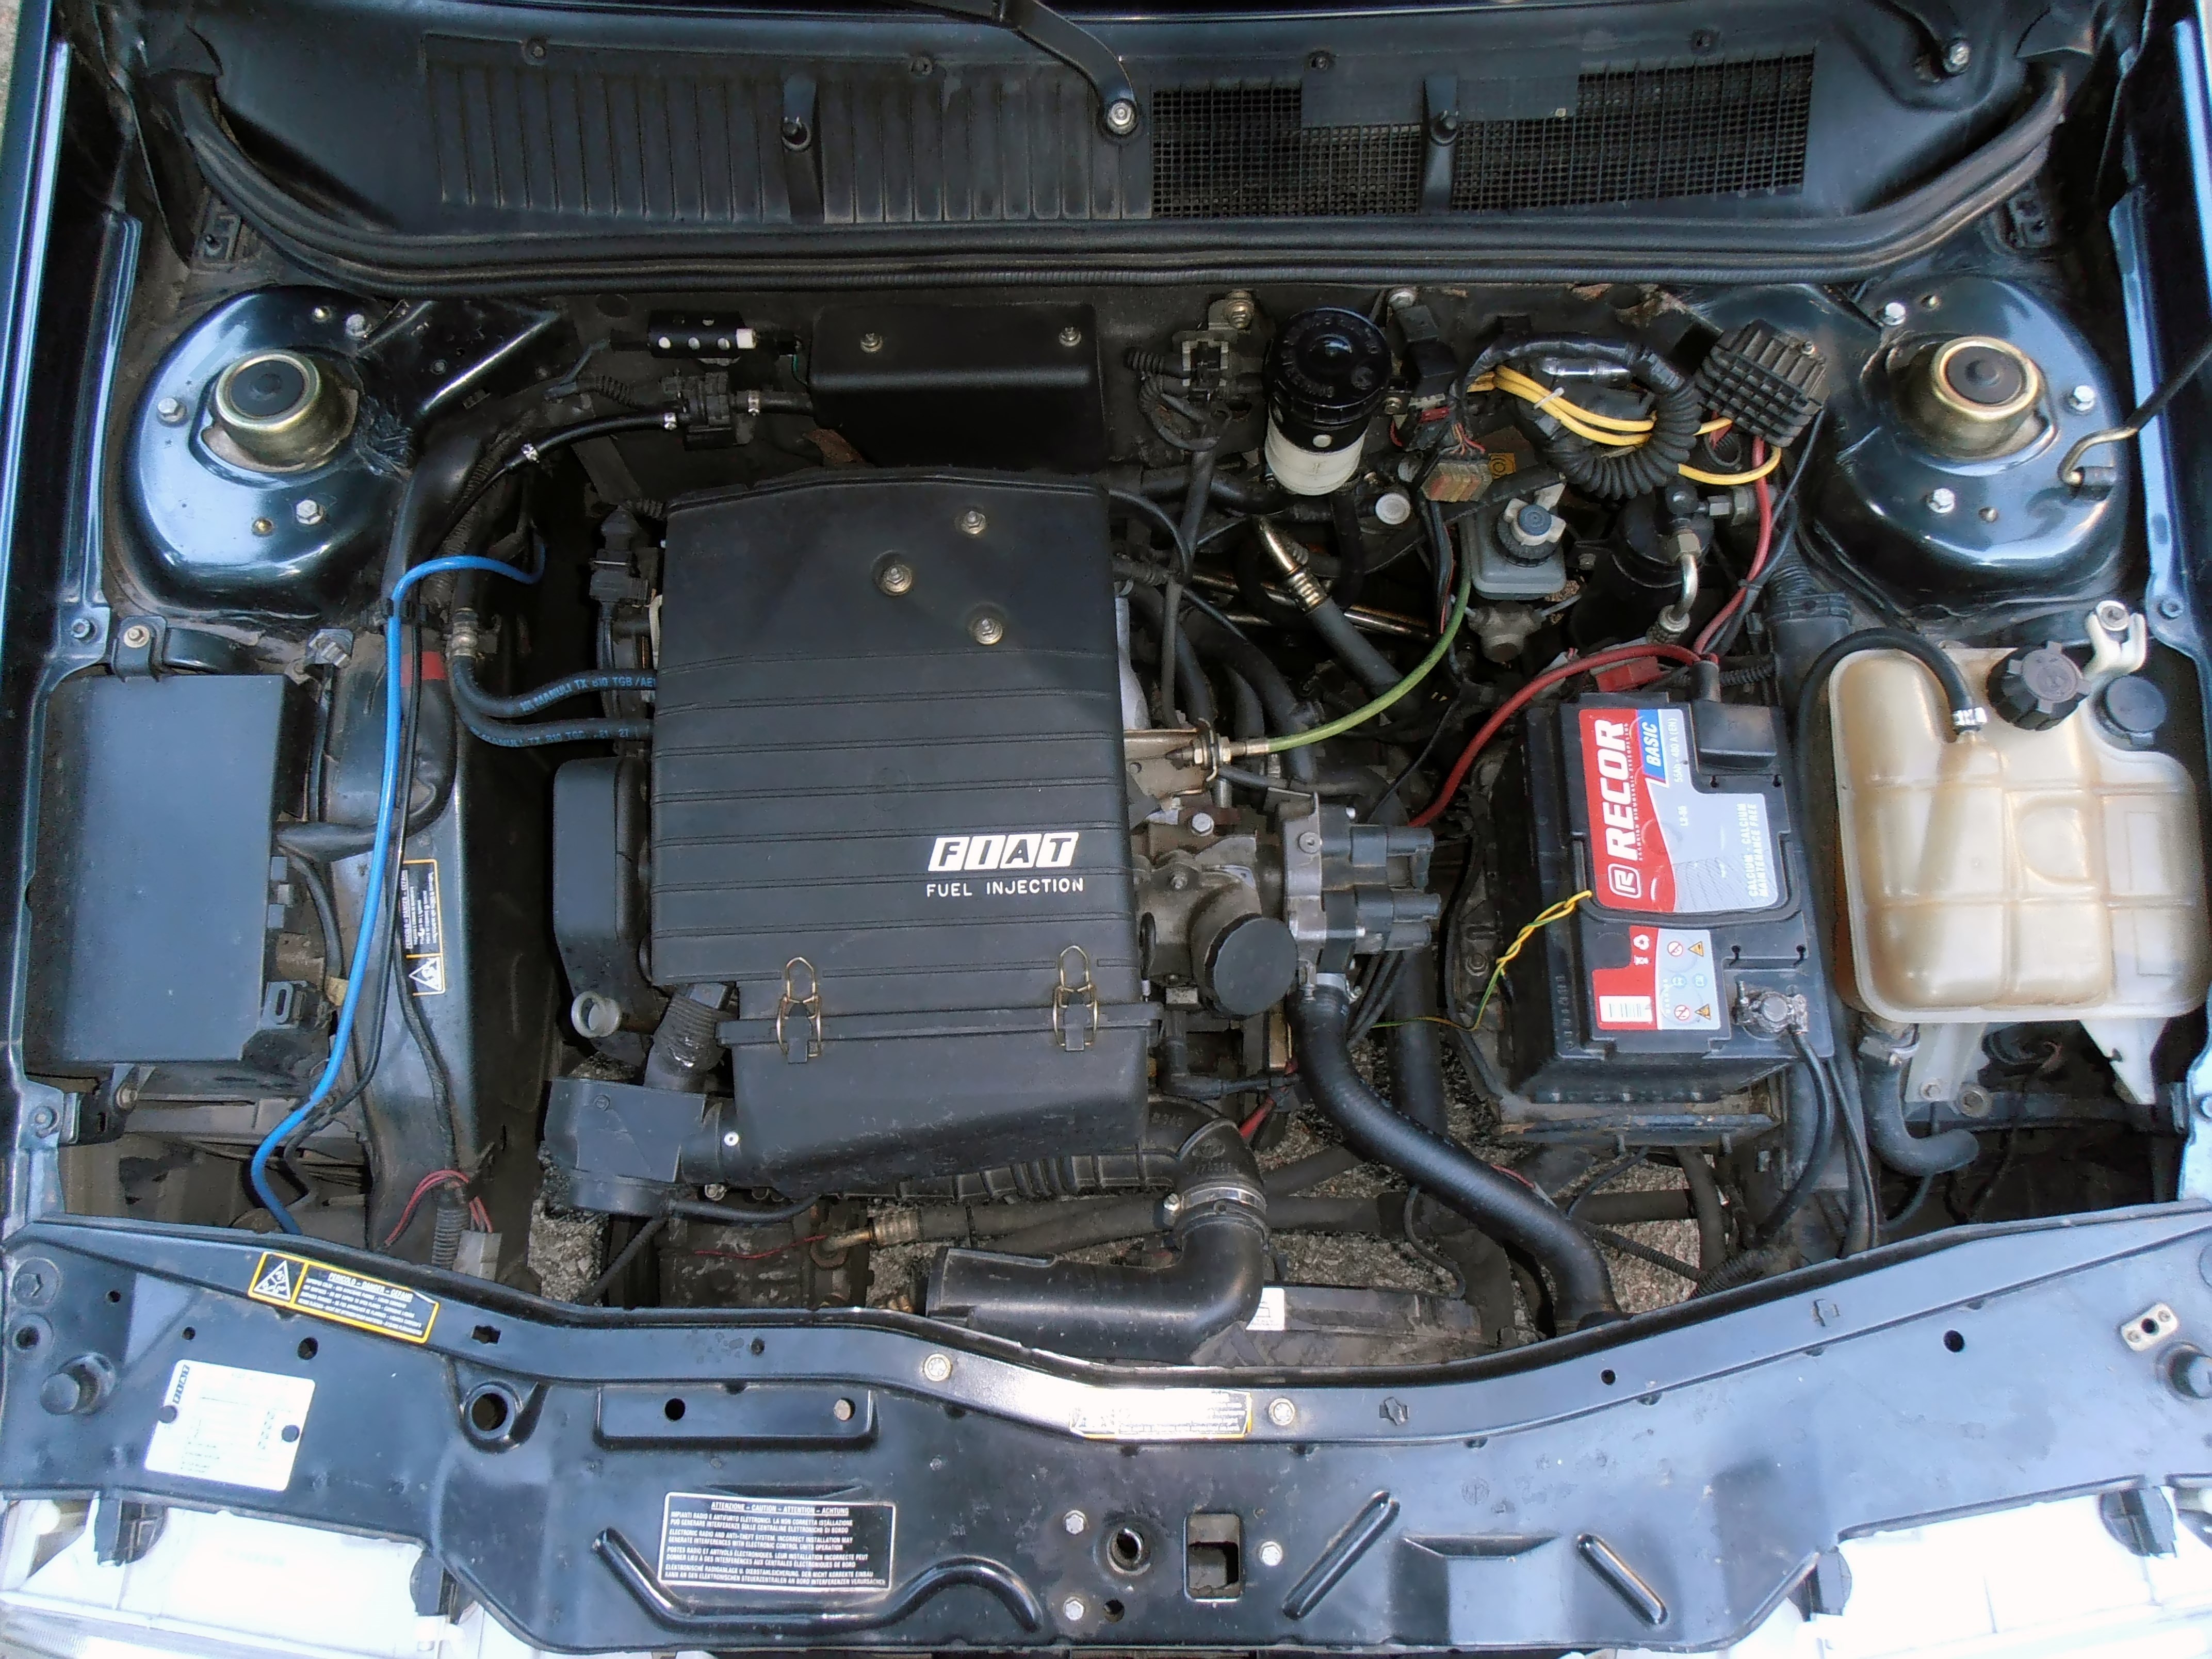 Fiat Tempra SLX 1.6 i.e. engine